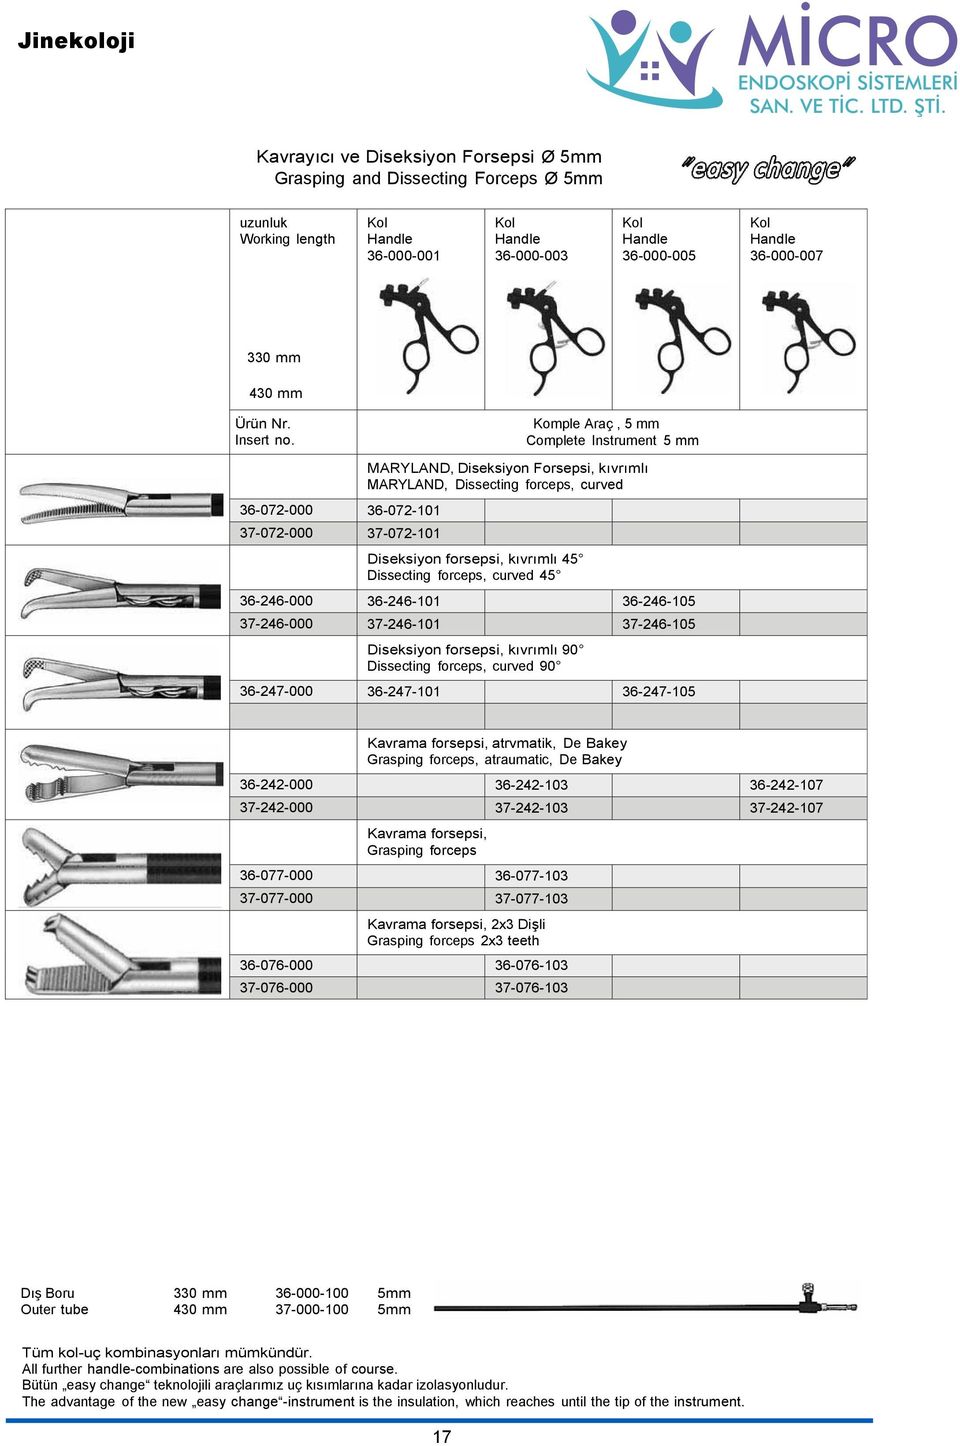 Komple Araç, 5 mm Complete Instrument 5 mm 36-072-000 36-072-101 37-072-000 37-072-101 MARYLAND, Diseksiyon Forsepsi, kıvrımlı MARYLAND, Dissecting forceps, curved Diseksiyon forsepsi, kıvrımlı 45